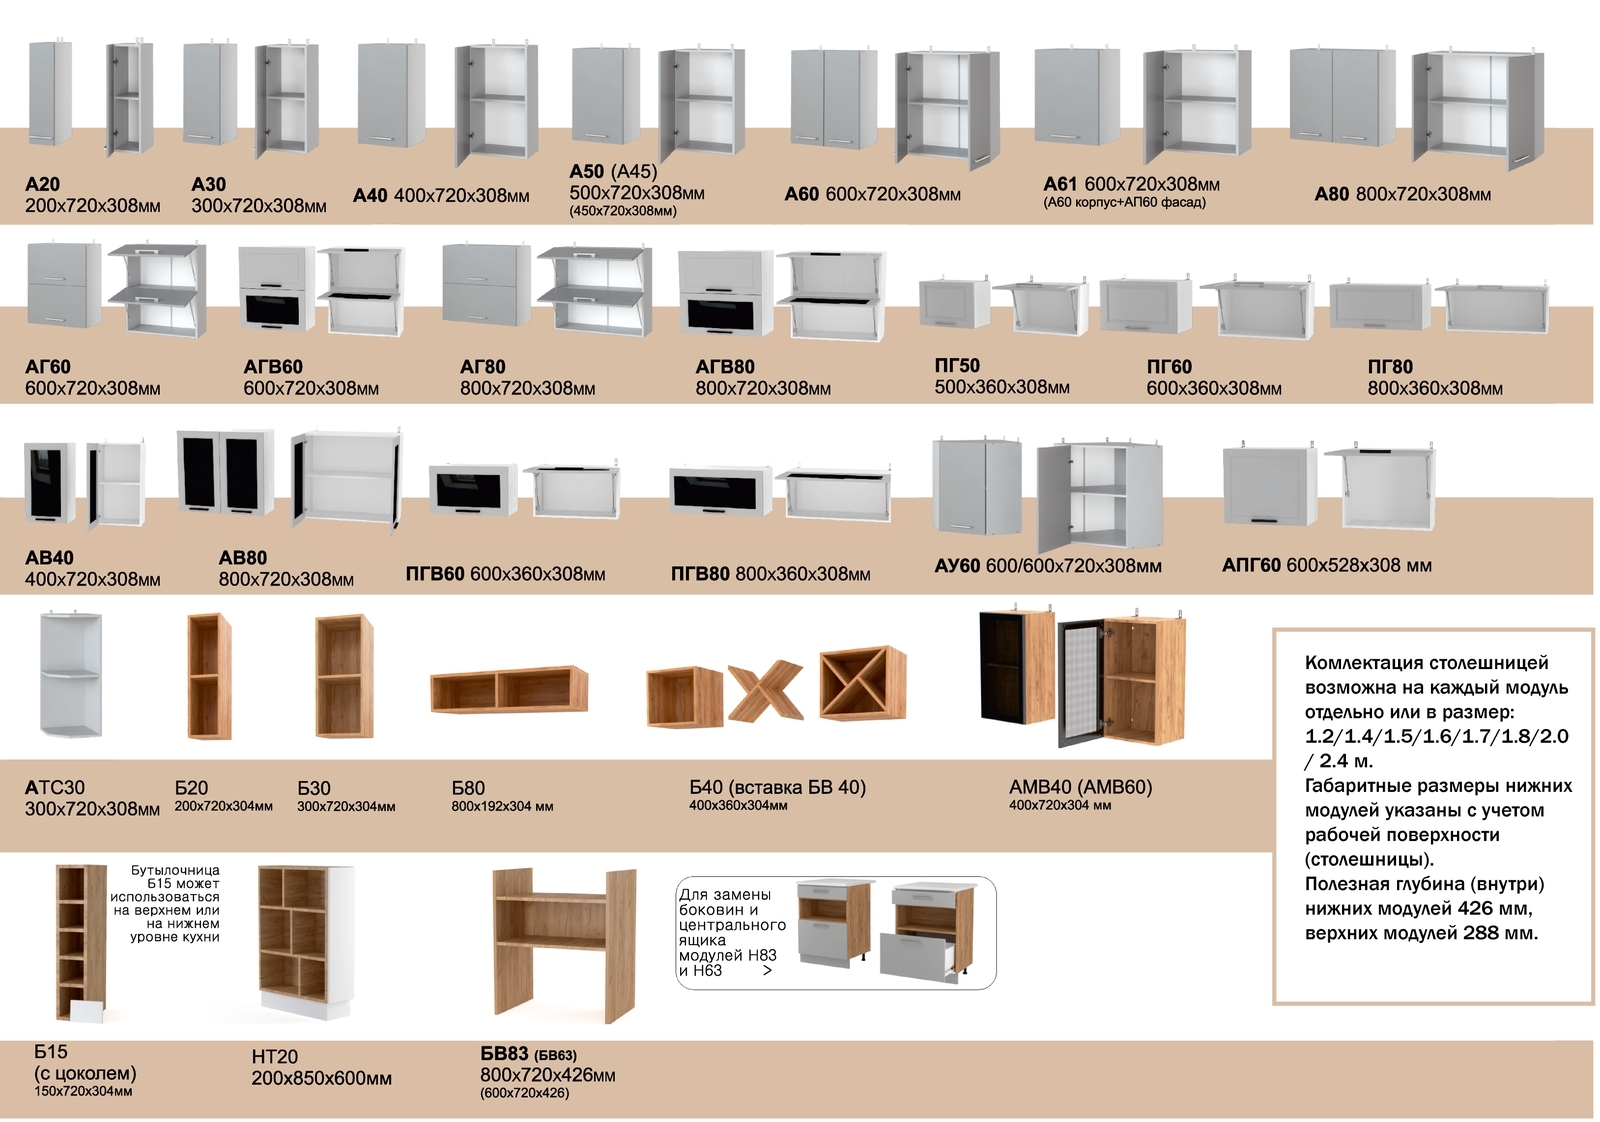 Модули кухни фабрики Леко мебель